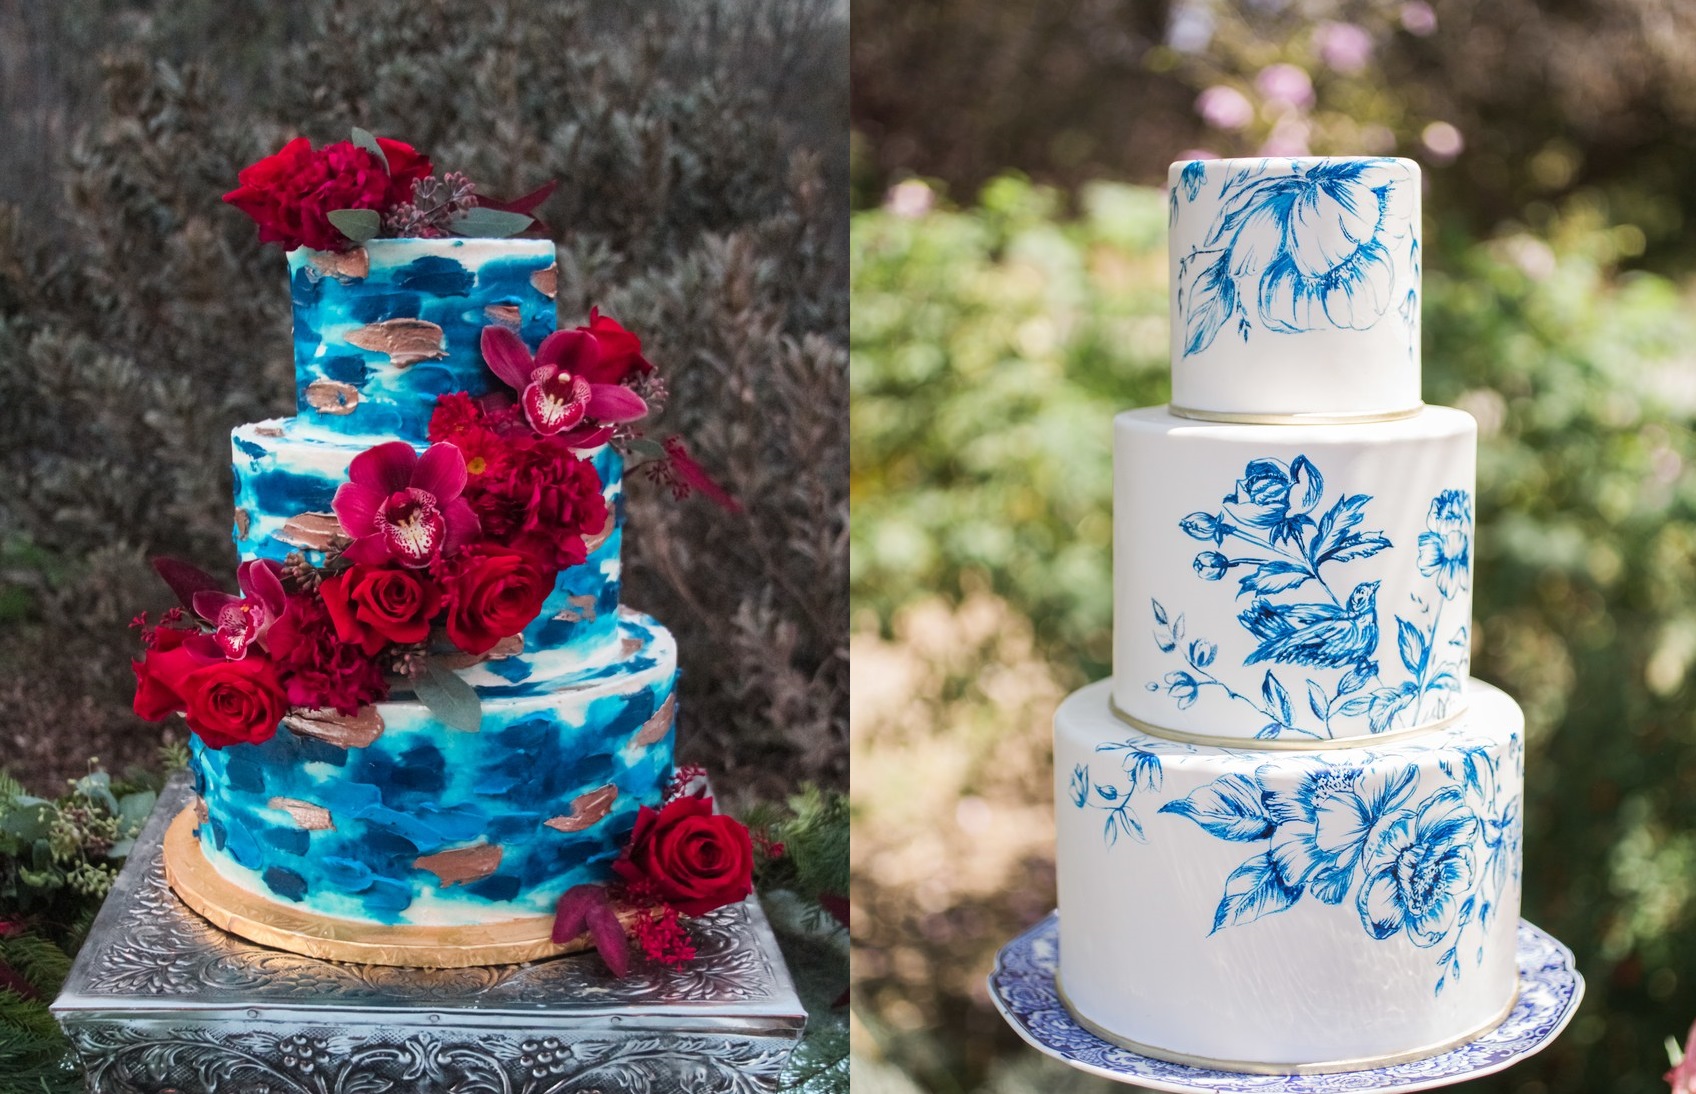 Bánh cưới hoa tươi tuy không còn quá xa lạ với các cặp đôi trong ngày cưới, nhưng hãy cùng Marry tham khảo thêm những mẫu bánh độc đáo từ Marry.vn nhé!